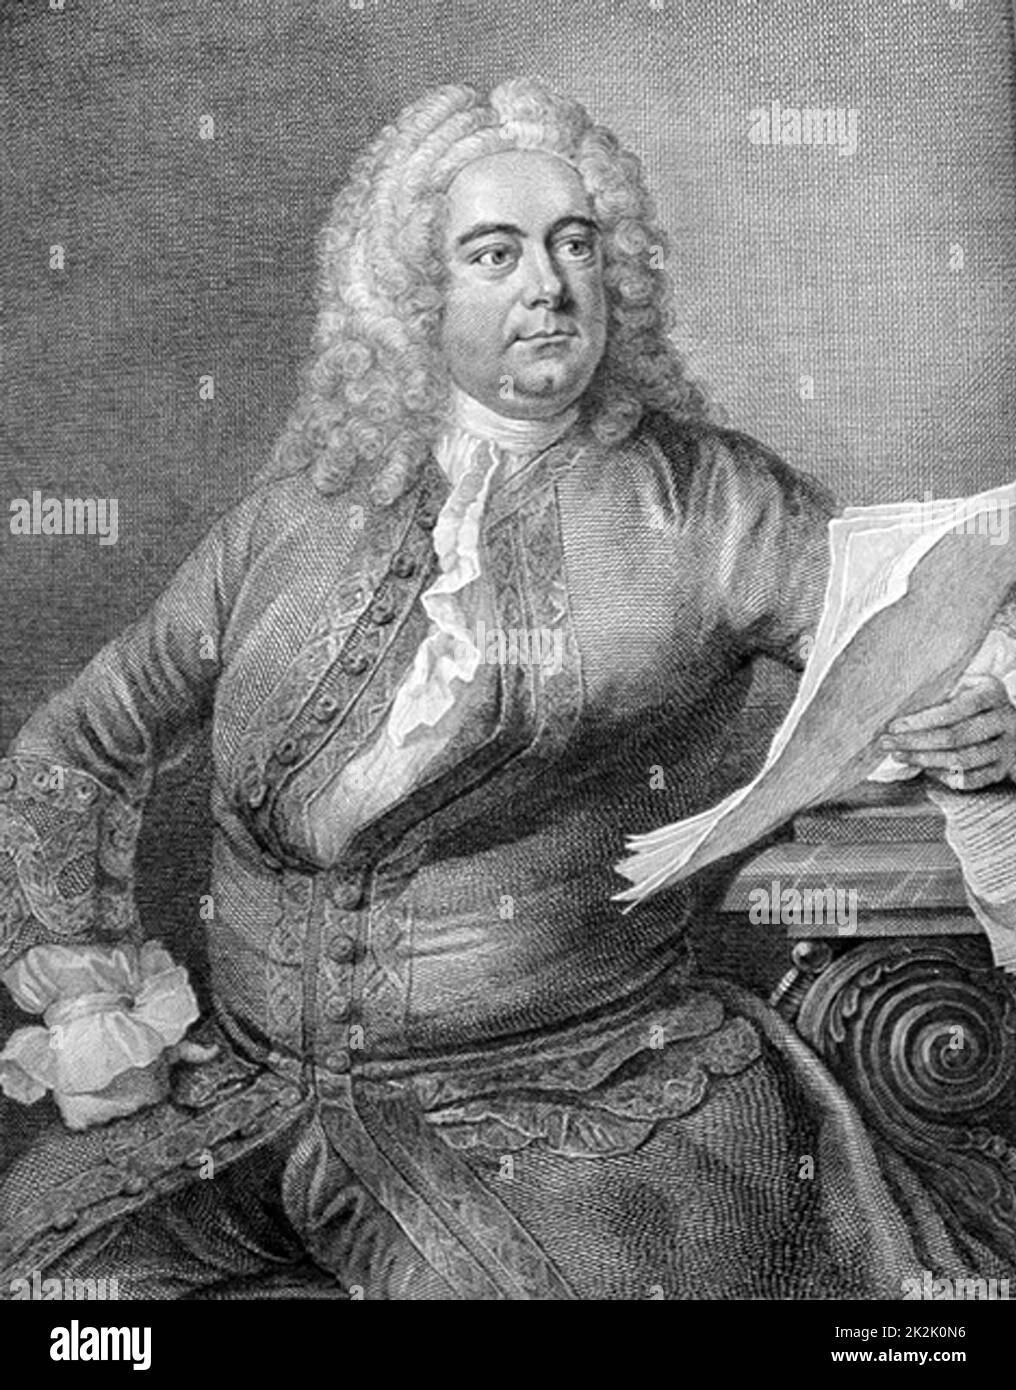 George Frederic Handel (1685-1759) compositore barocco inglese di origine tedesca. Incisione di ritratti dall'edizione di Thomas Arne delle opere di Handel. Foto Stock